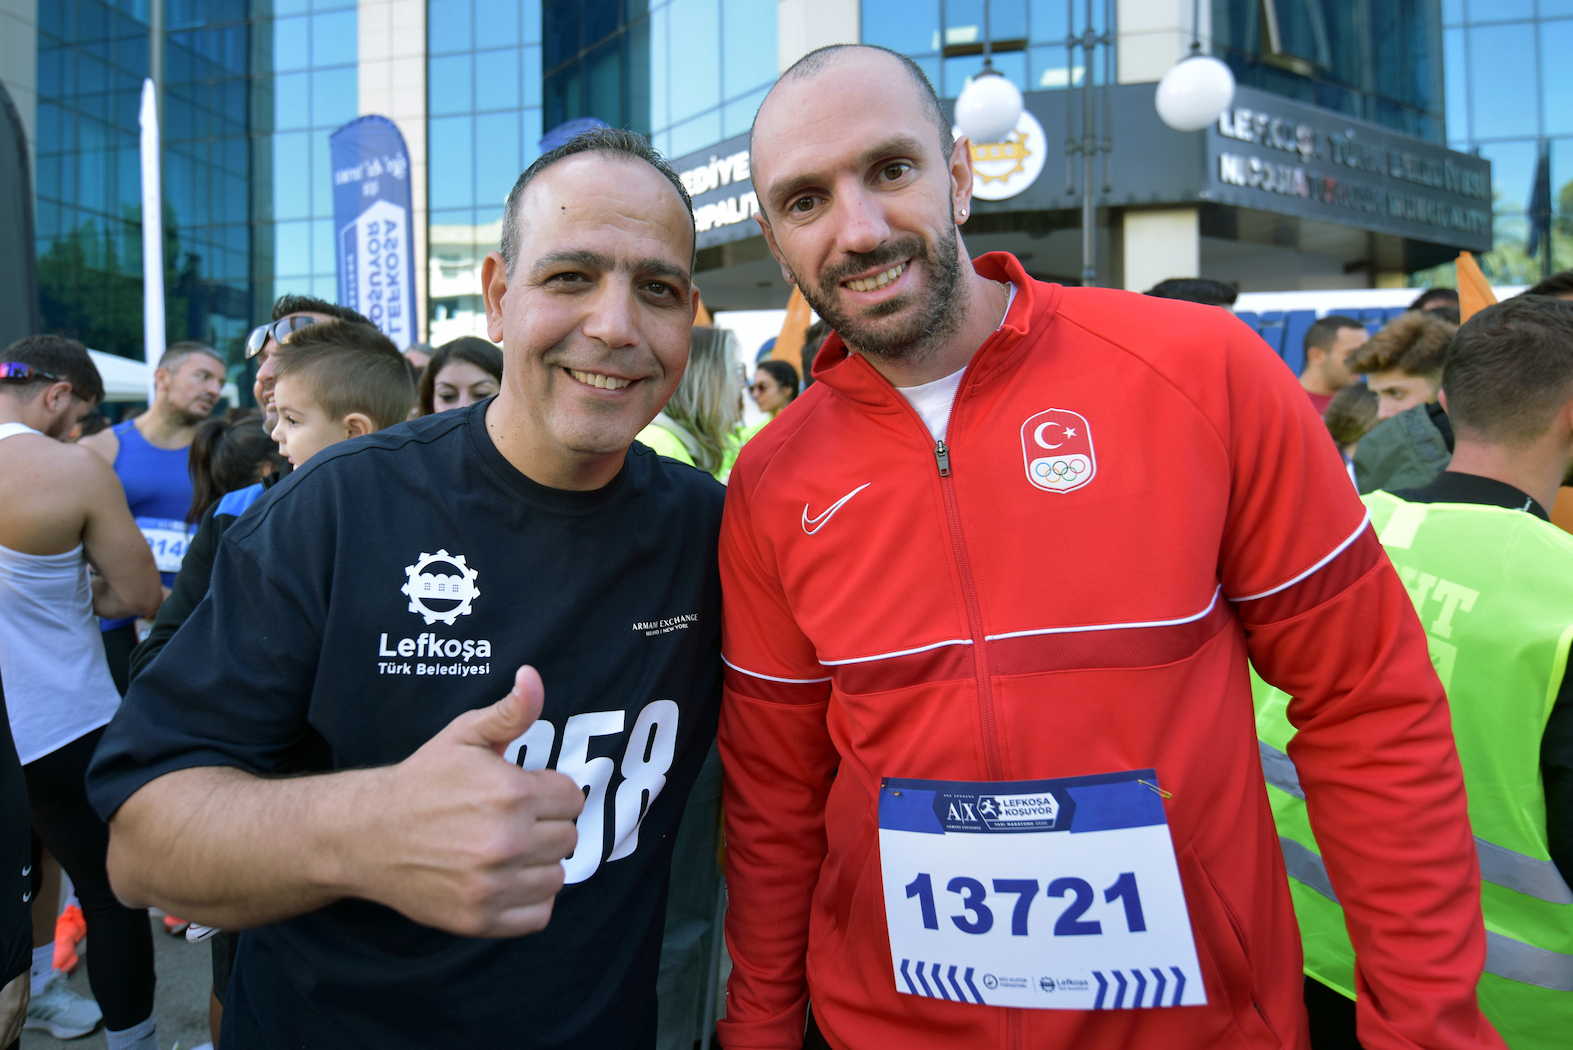 Harmancı Lefkoşa Maratonu’nda bir kez daha çok büyük bir beraberlik gösterildiğini belirtti